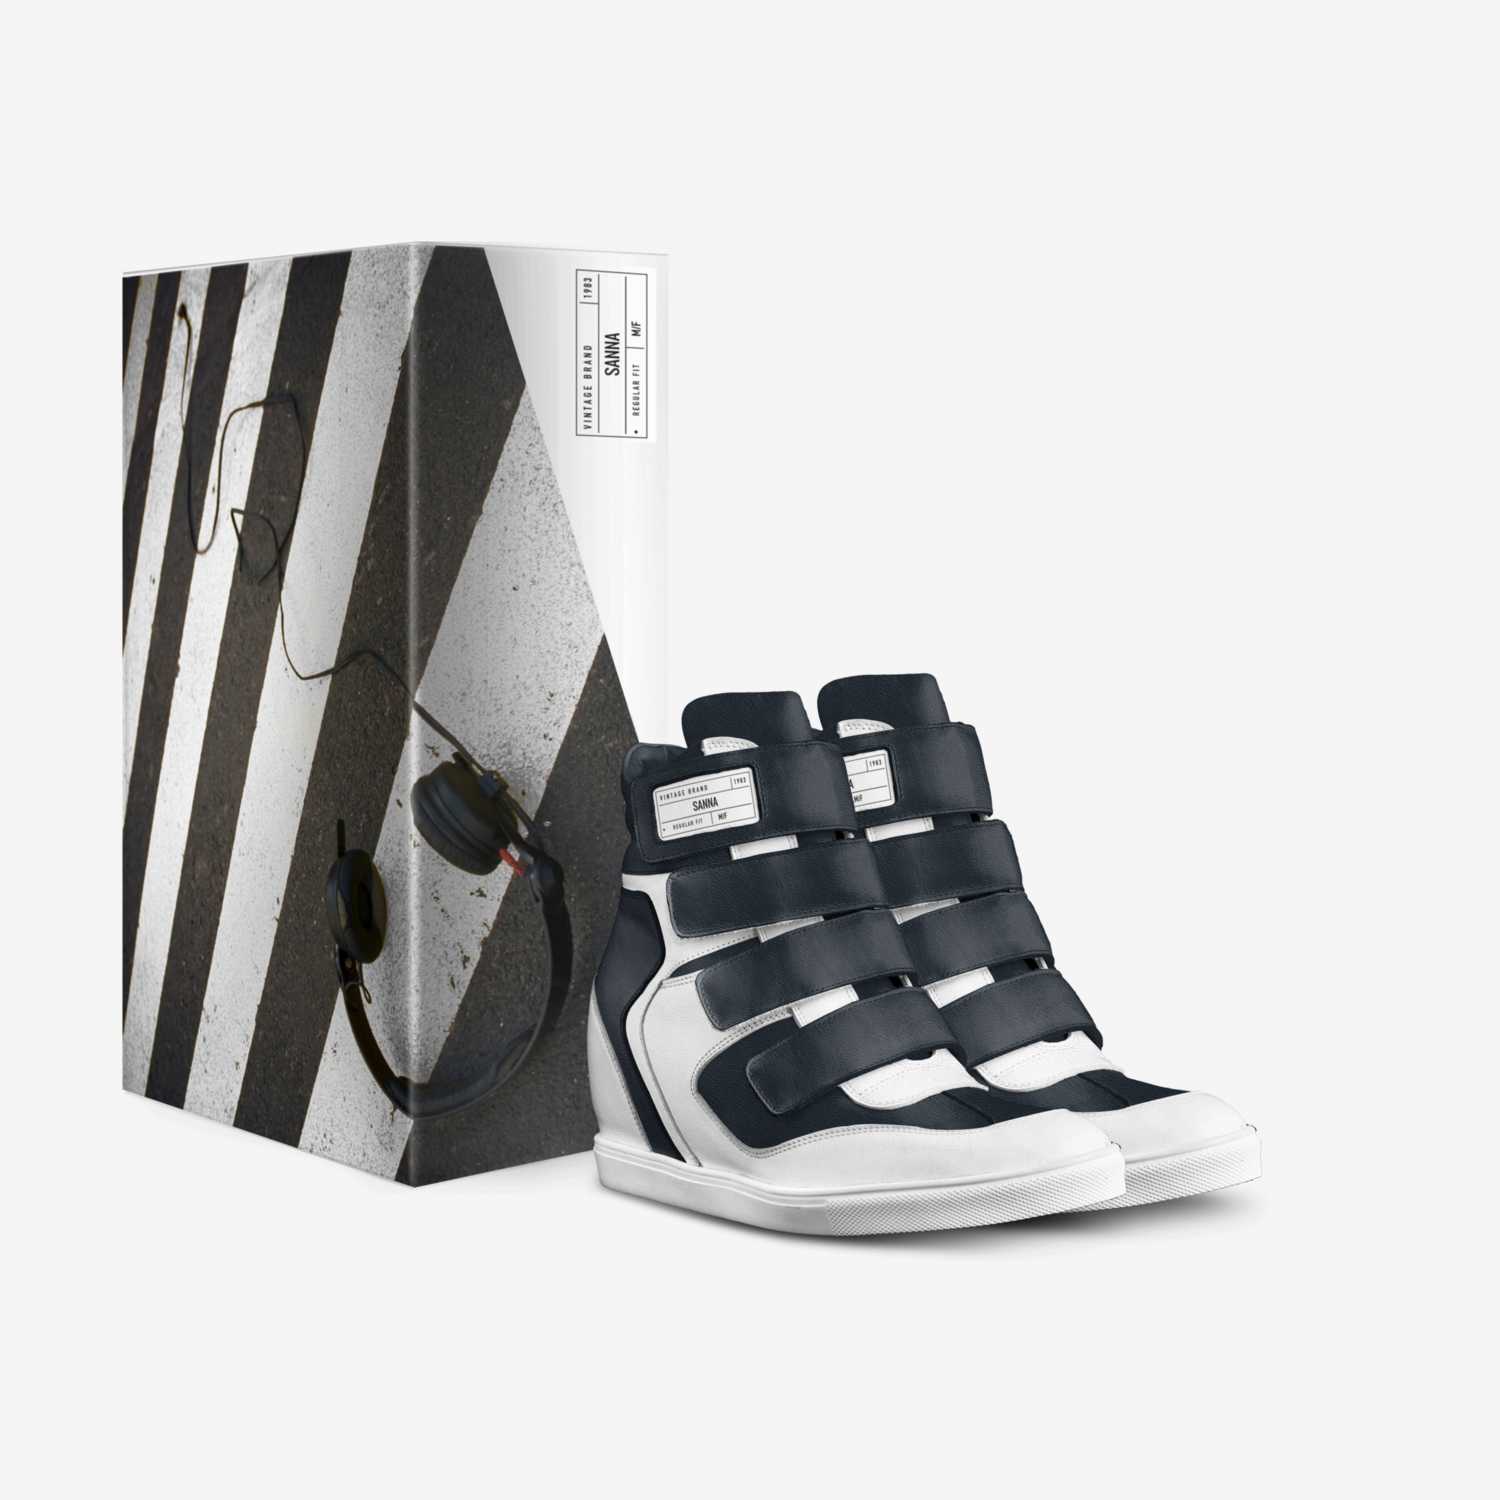 SANNA custom made in Italy shoes by Sanna Vuorela | Box view